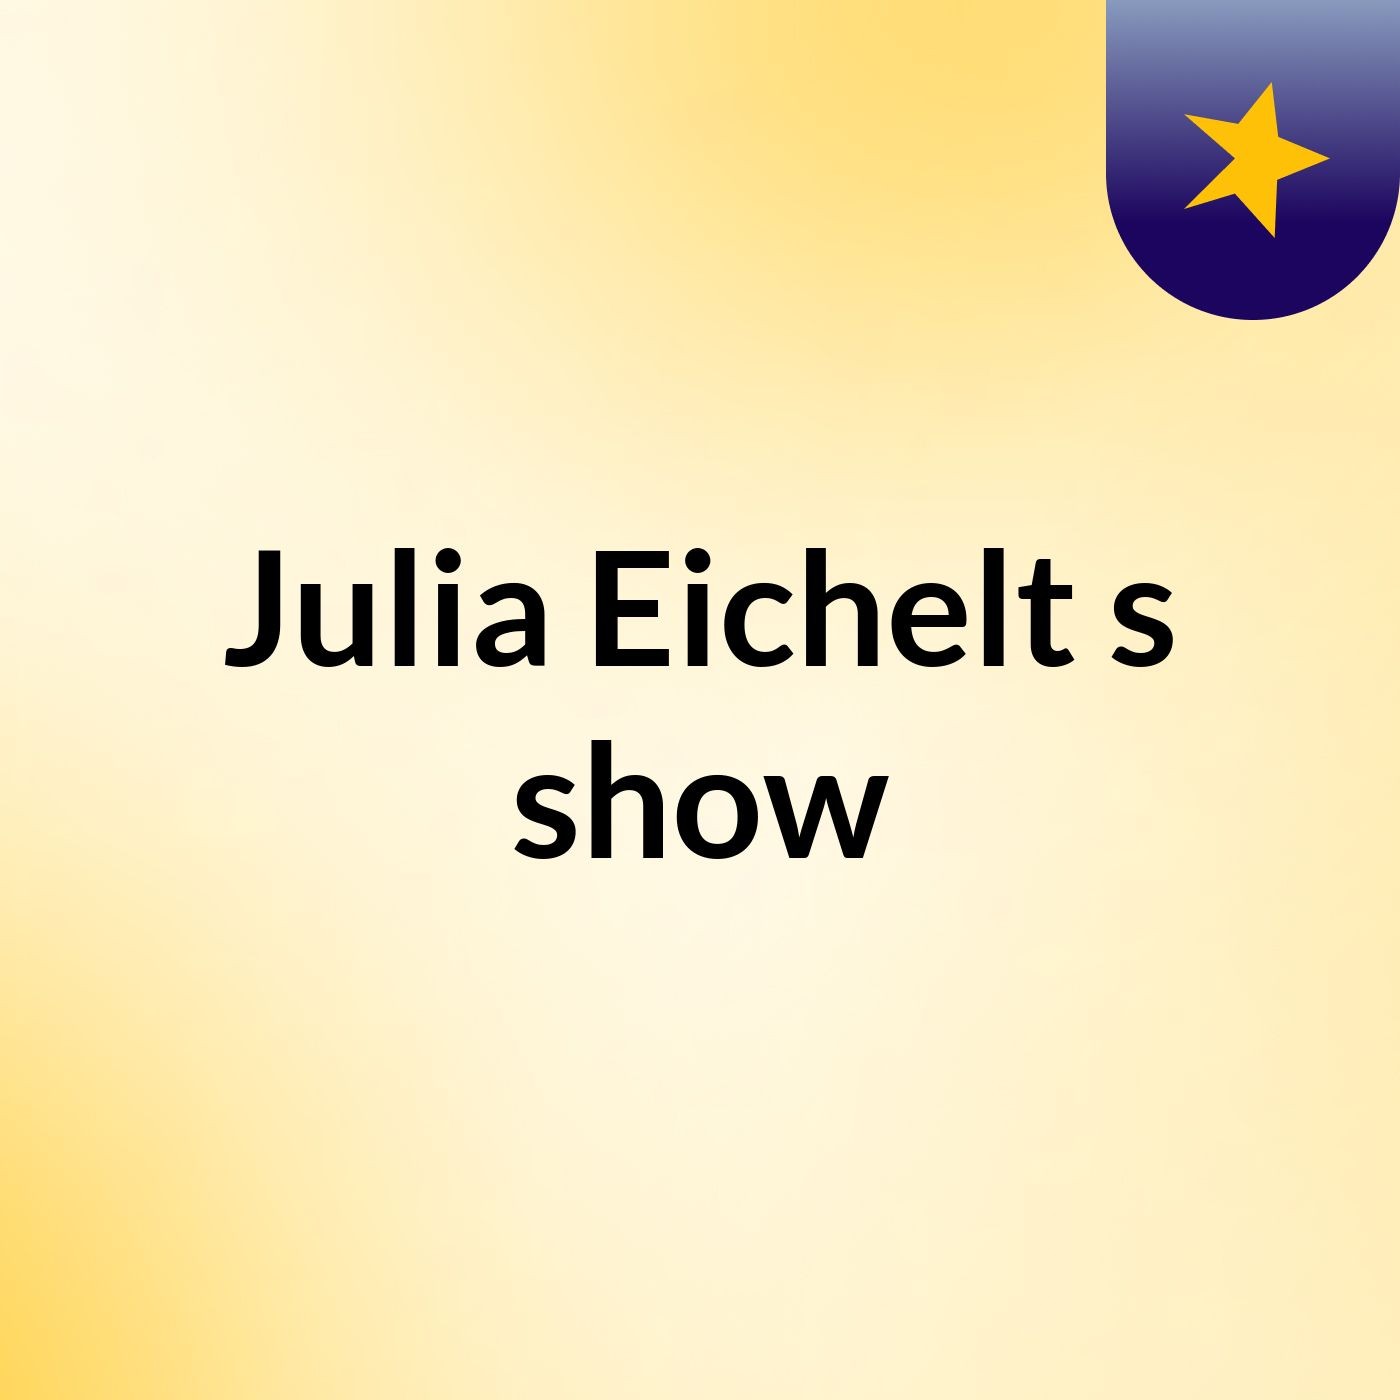 Julia Eichelt's show